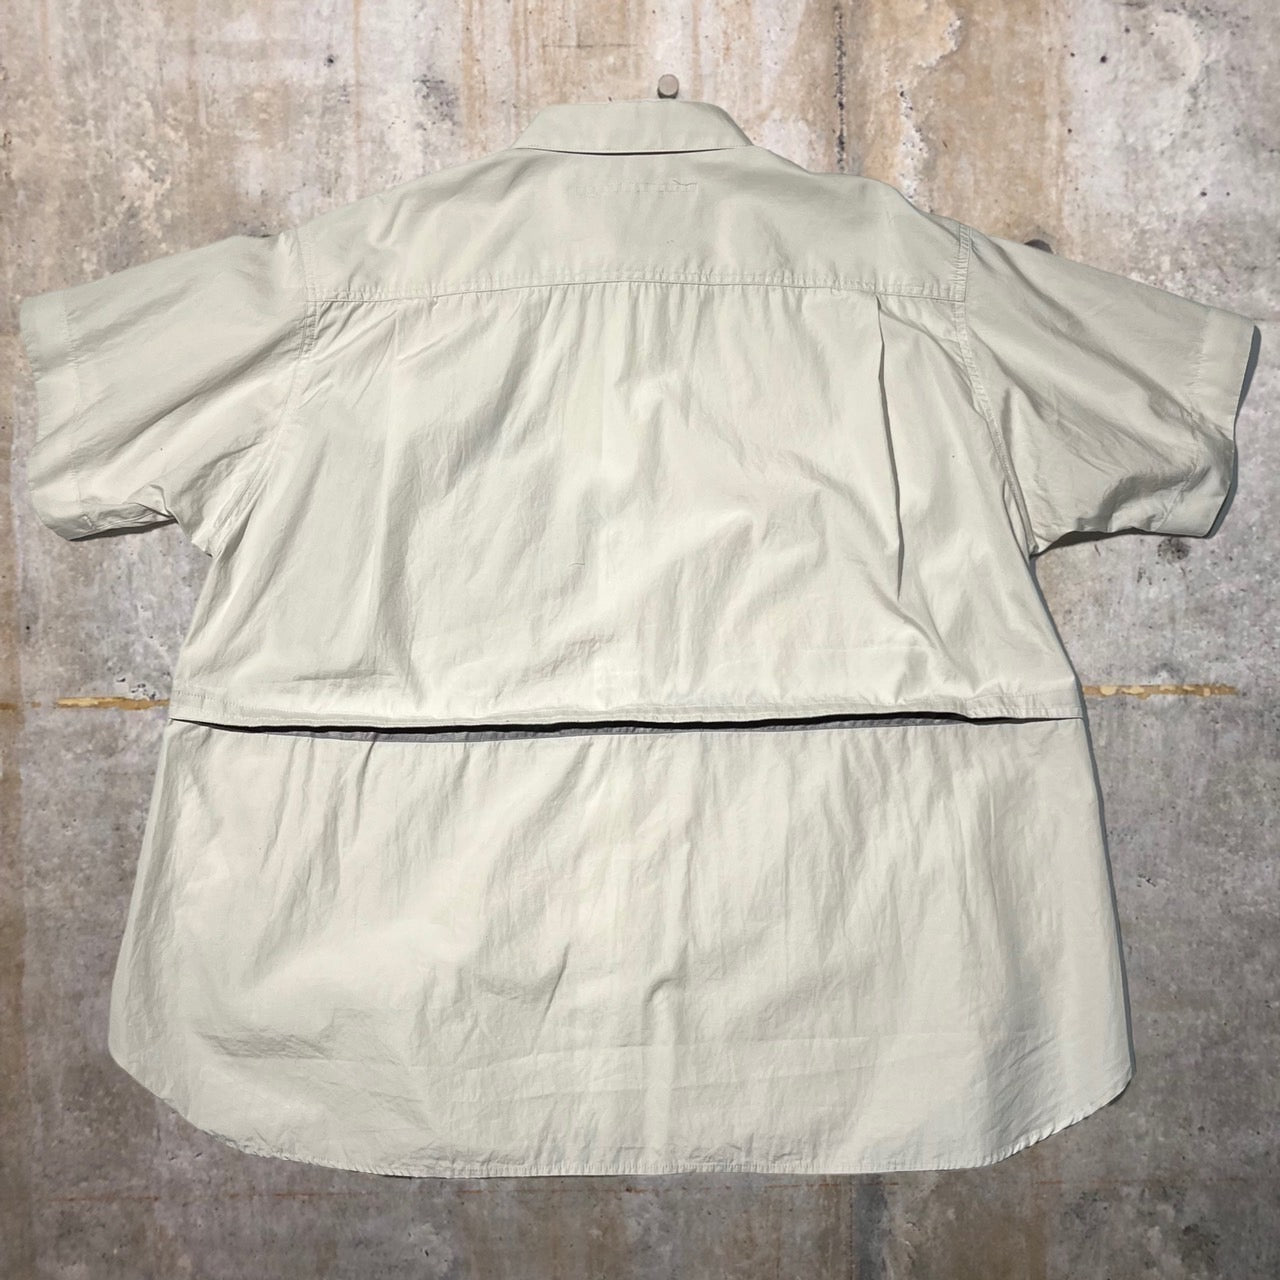 Tamme(タム) T.T S/S SHIRT/ポケットドッキング切替半袖シャツ 22SS0022 ベージュ